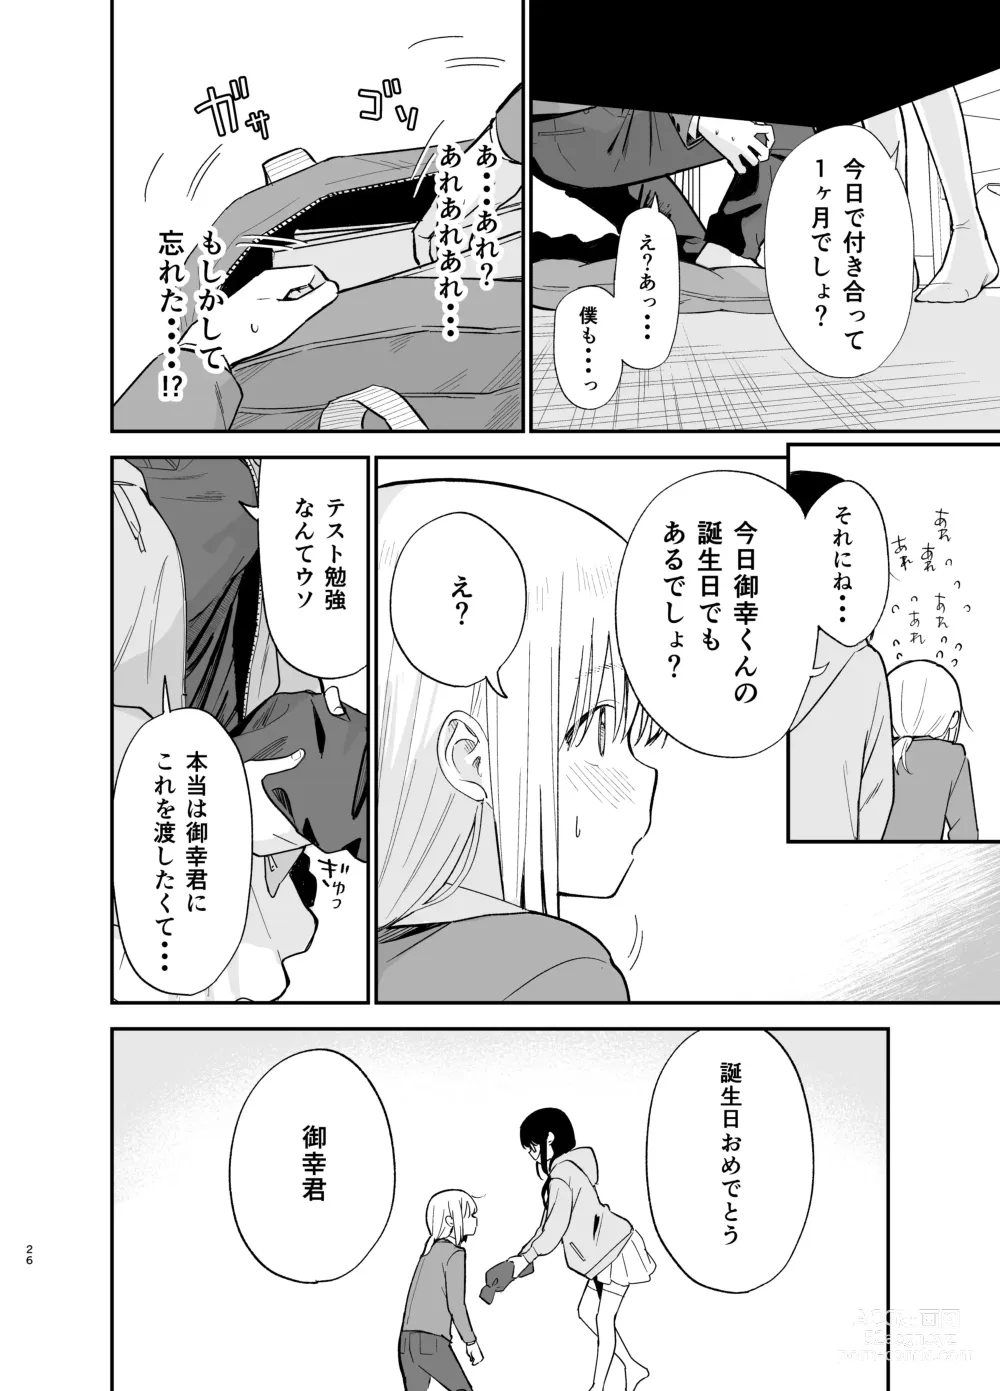 Page 26 of doujinshi Soushi Souai.